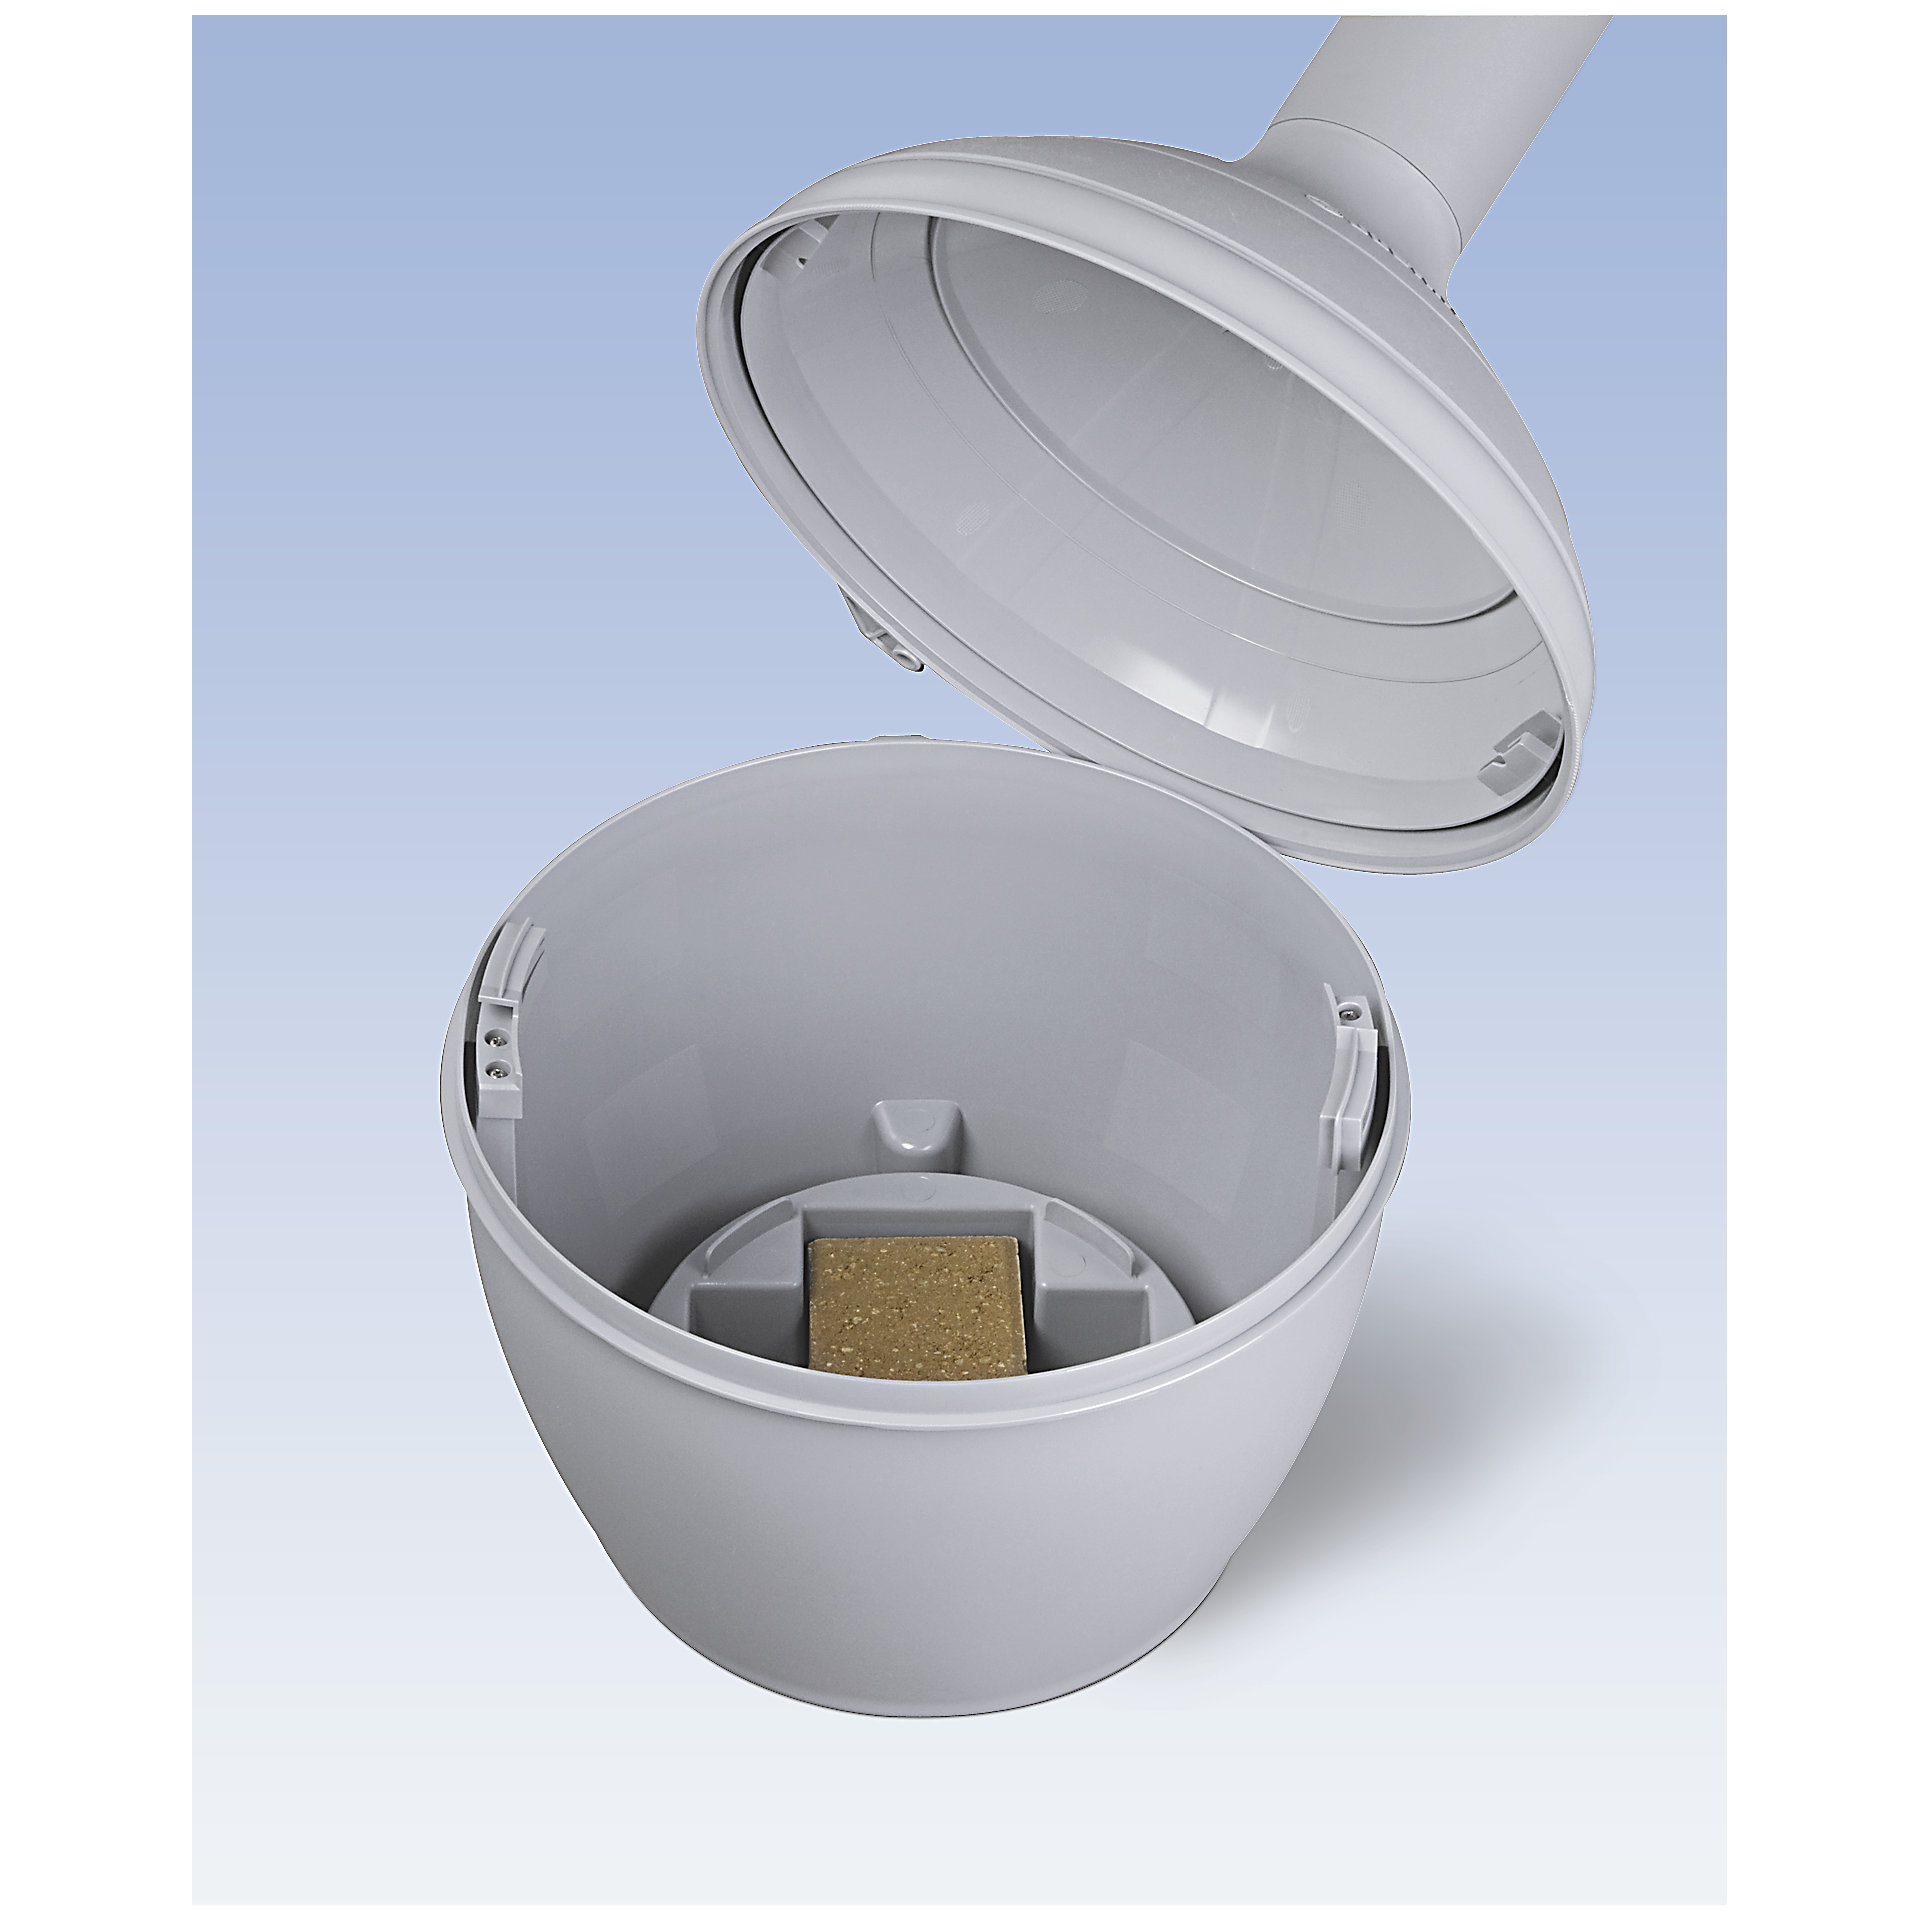 Justrite Sicherheits-Standascher aus Kunststoff Elite Smoker Cease Fire® | 15 Liter Innenbehälter, selbstlöschend | HxB 97x31cm | Grau